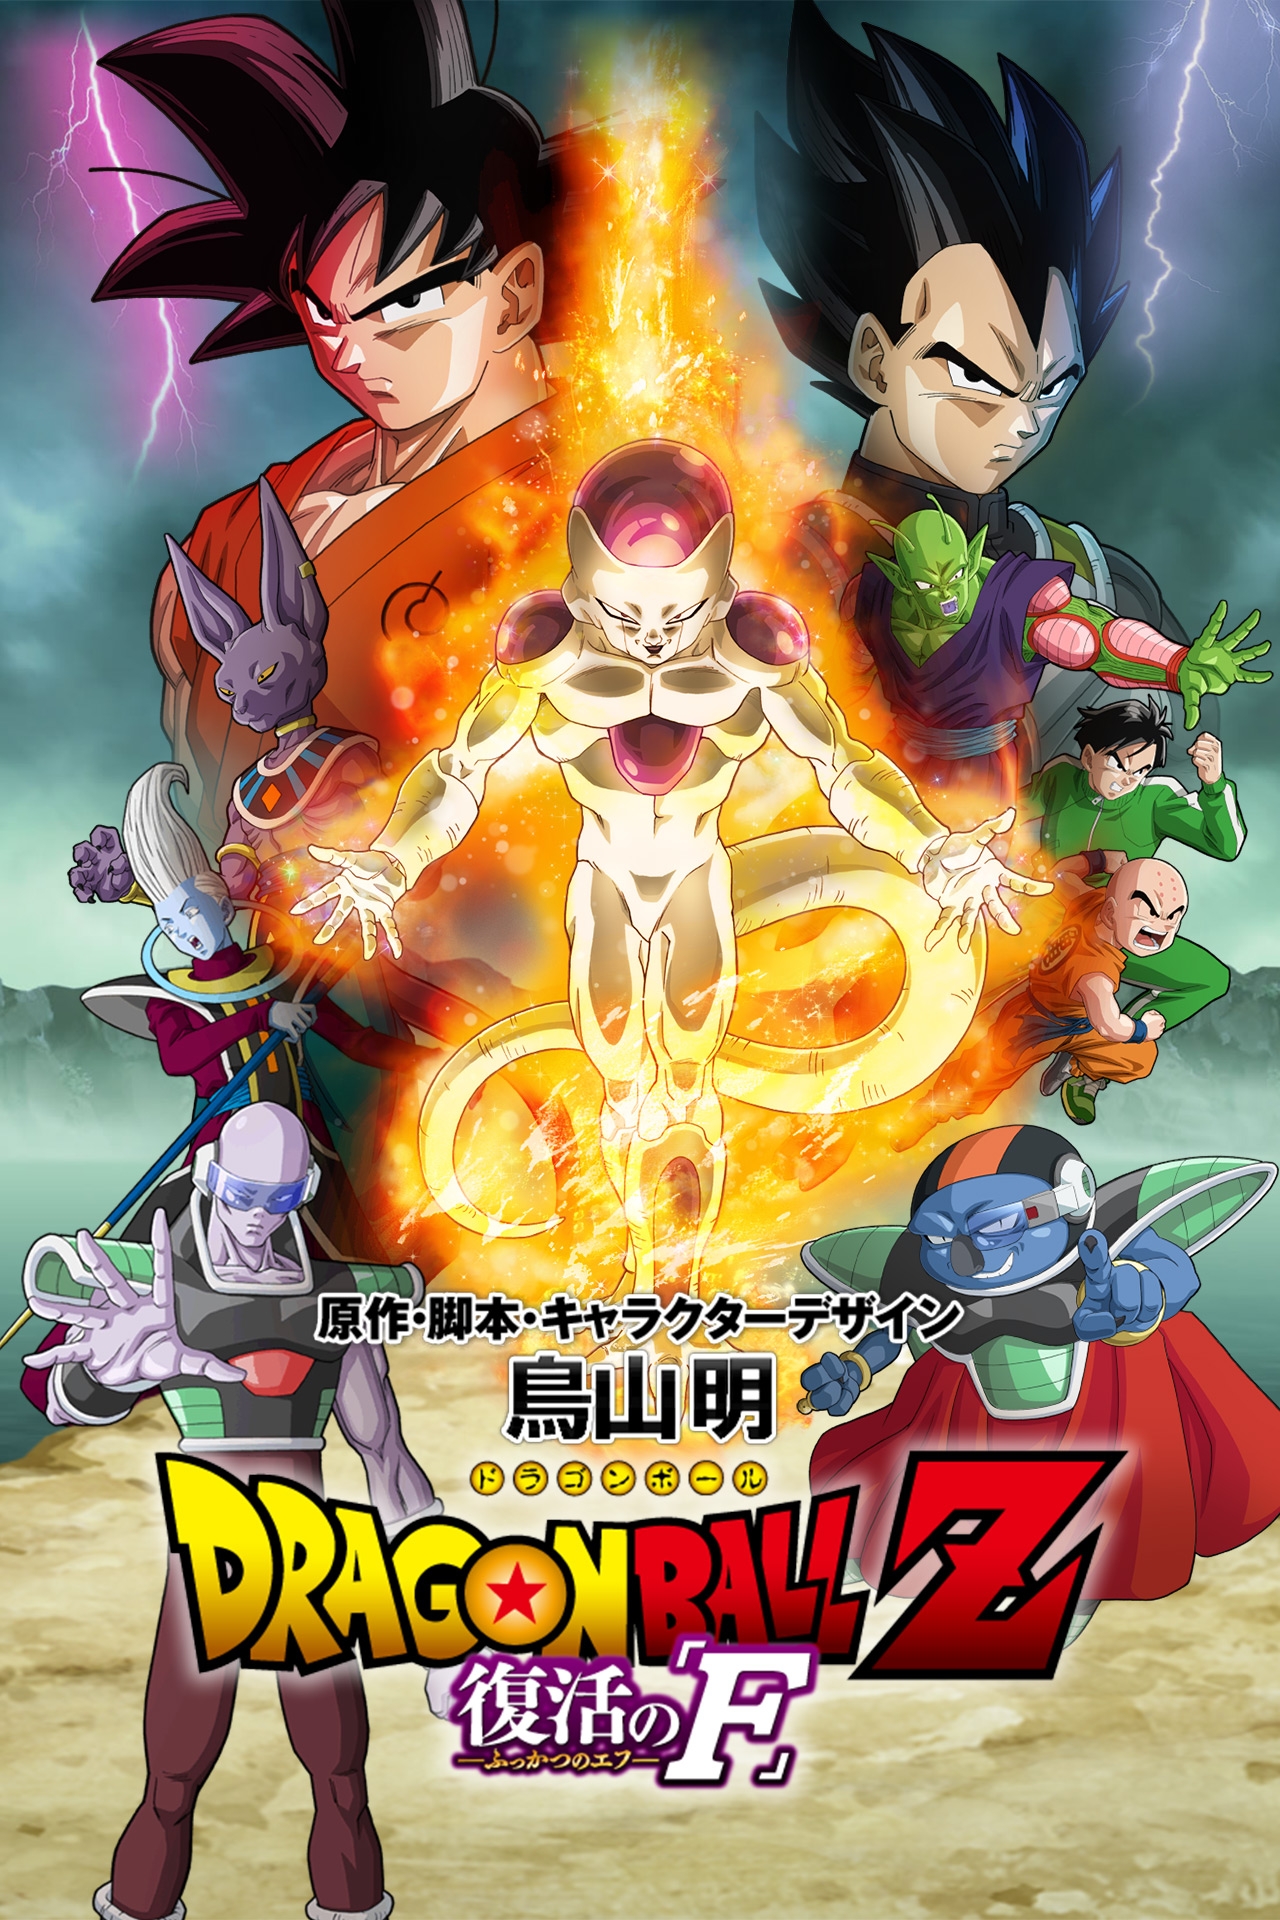 dragon ball super movie premiere